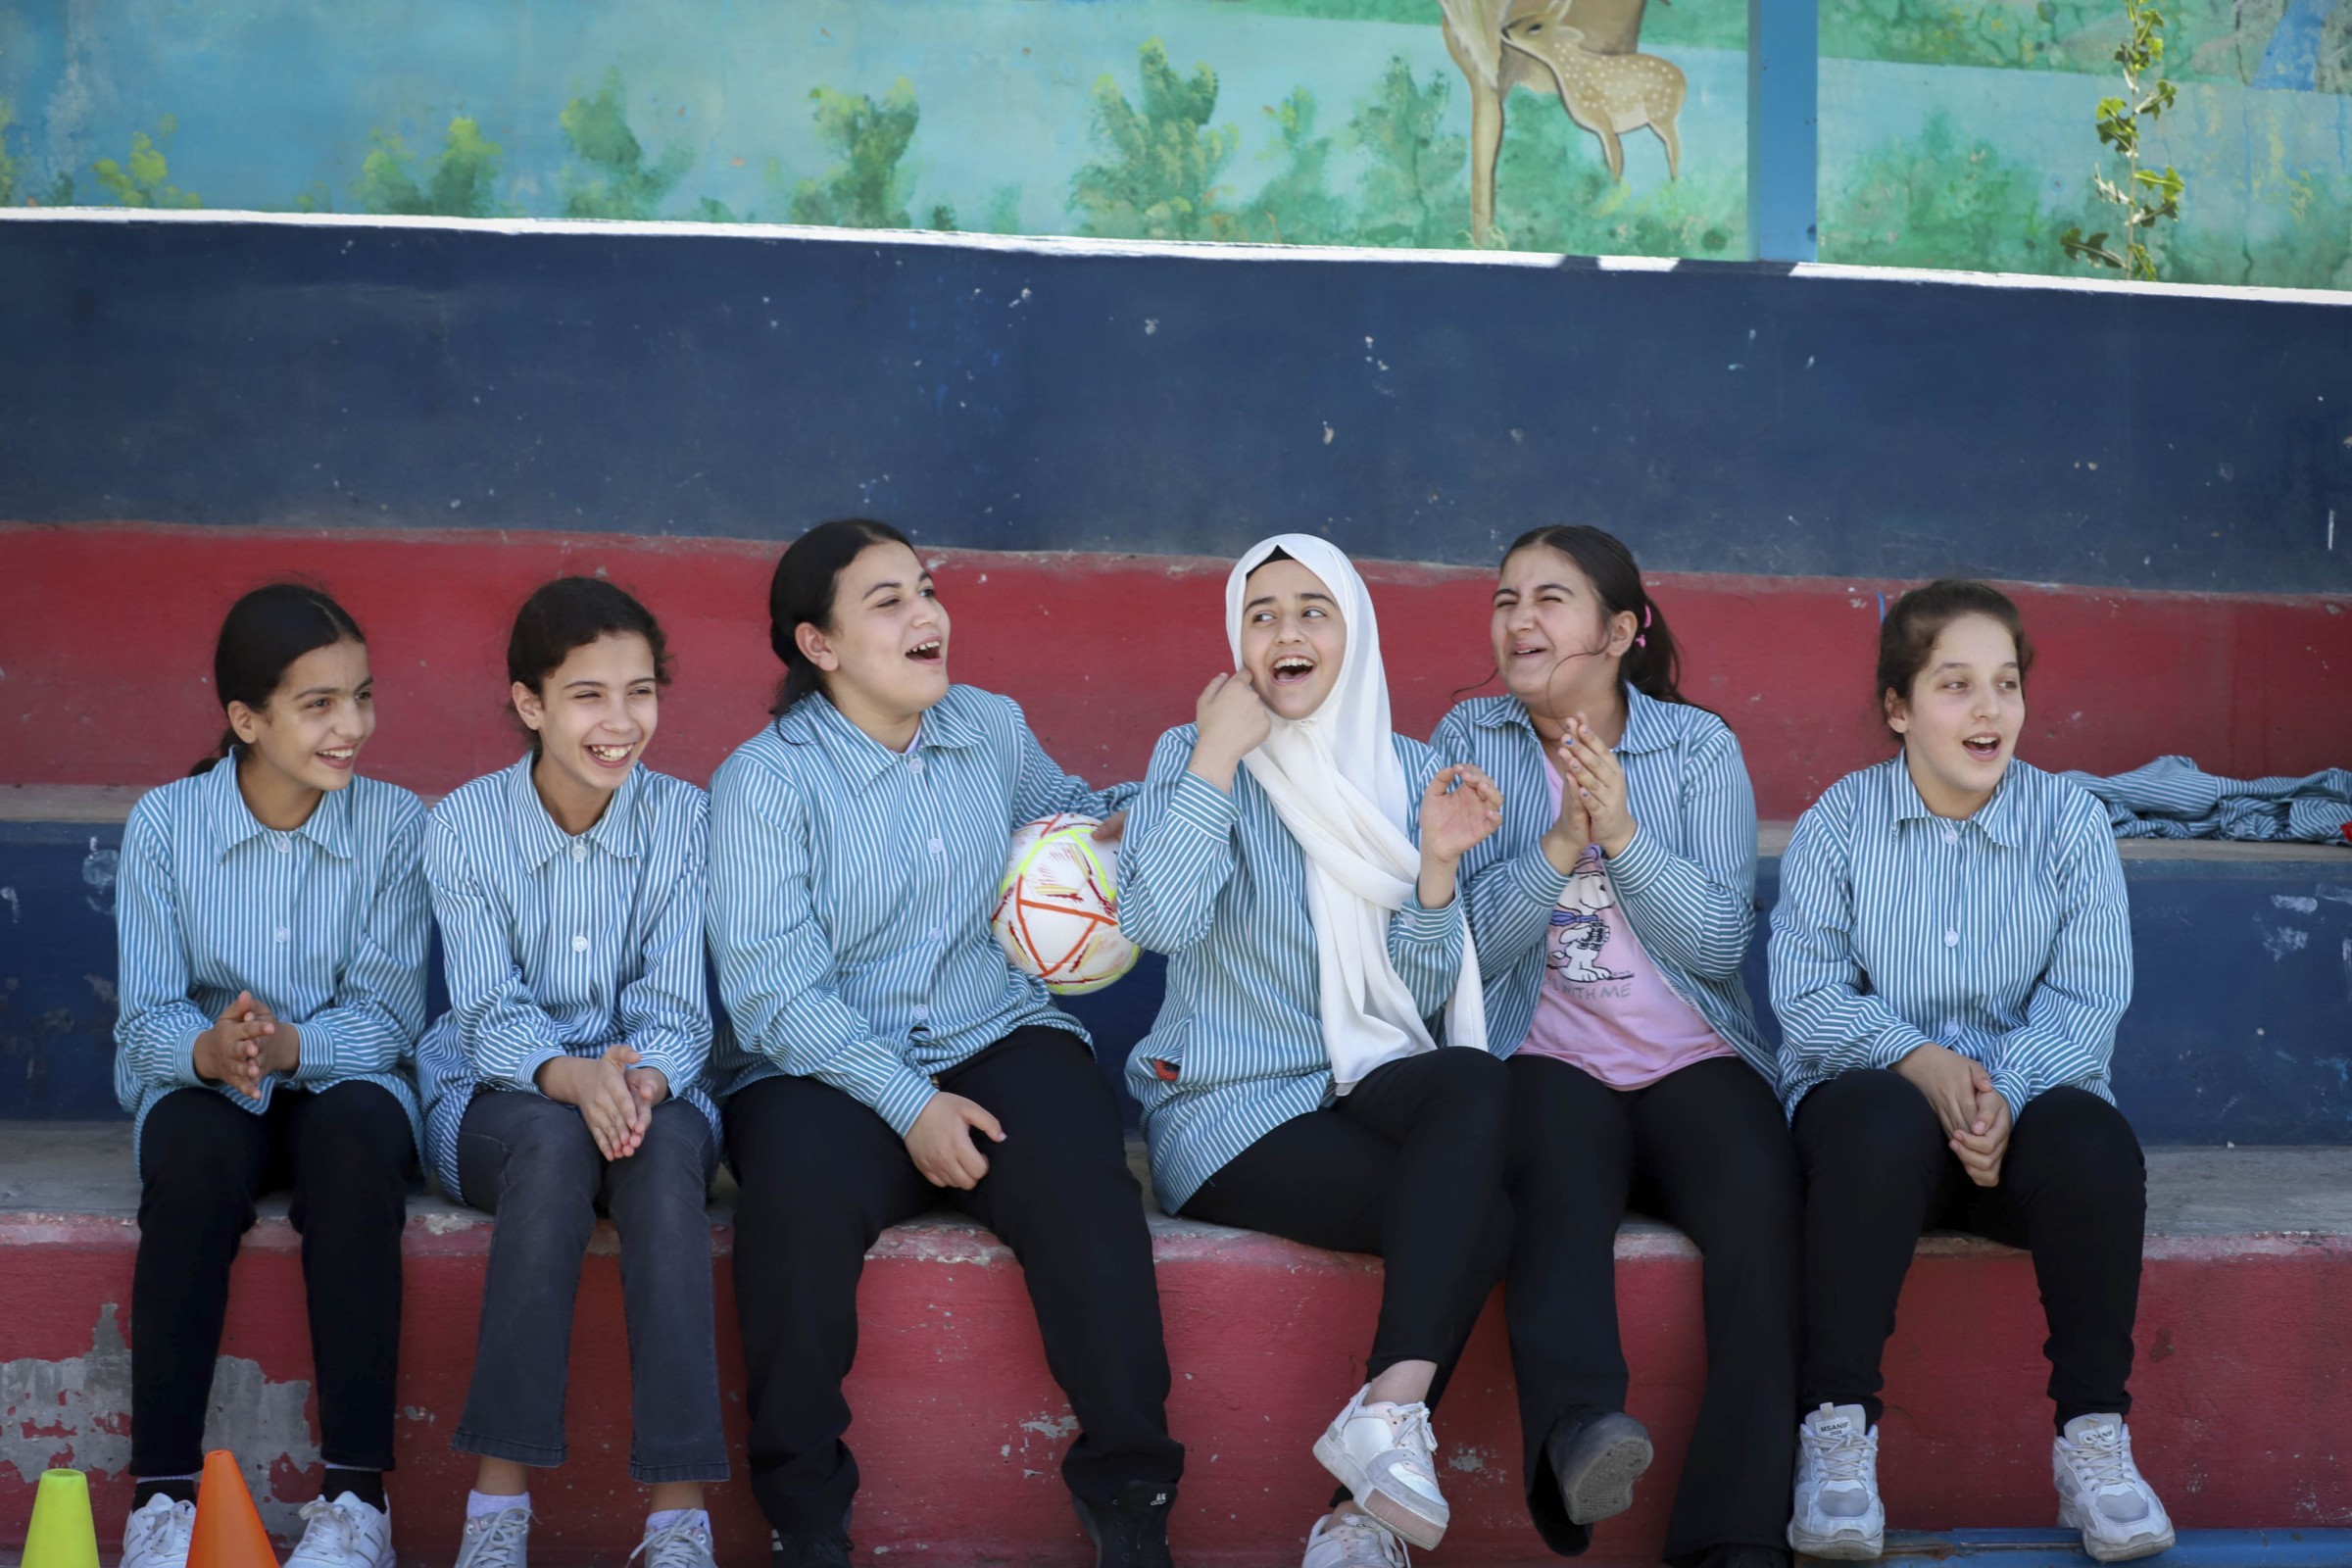 Mädchen aus Palästina sitzen auf der Wartebank beim Fussballspiel und lachen.